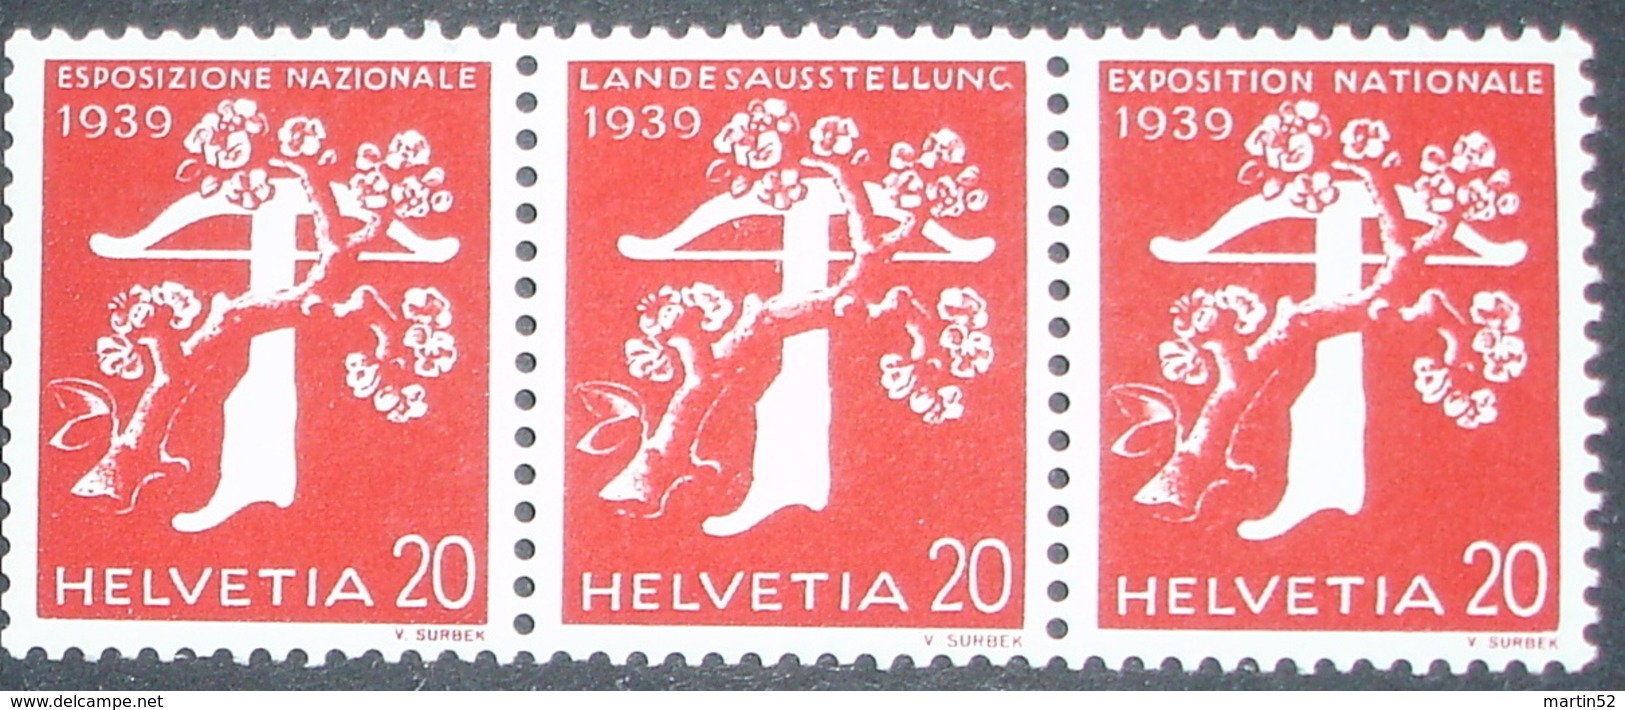 Schweiz Suisse Zusammendruck Se-tenant 1939: Zu Z27c Mi W24 ** MNH Mit Nummer Avec No O1190 (Zu CHF 48.00) - Rouleaux